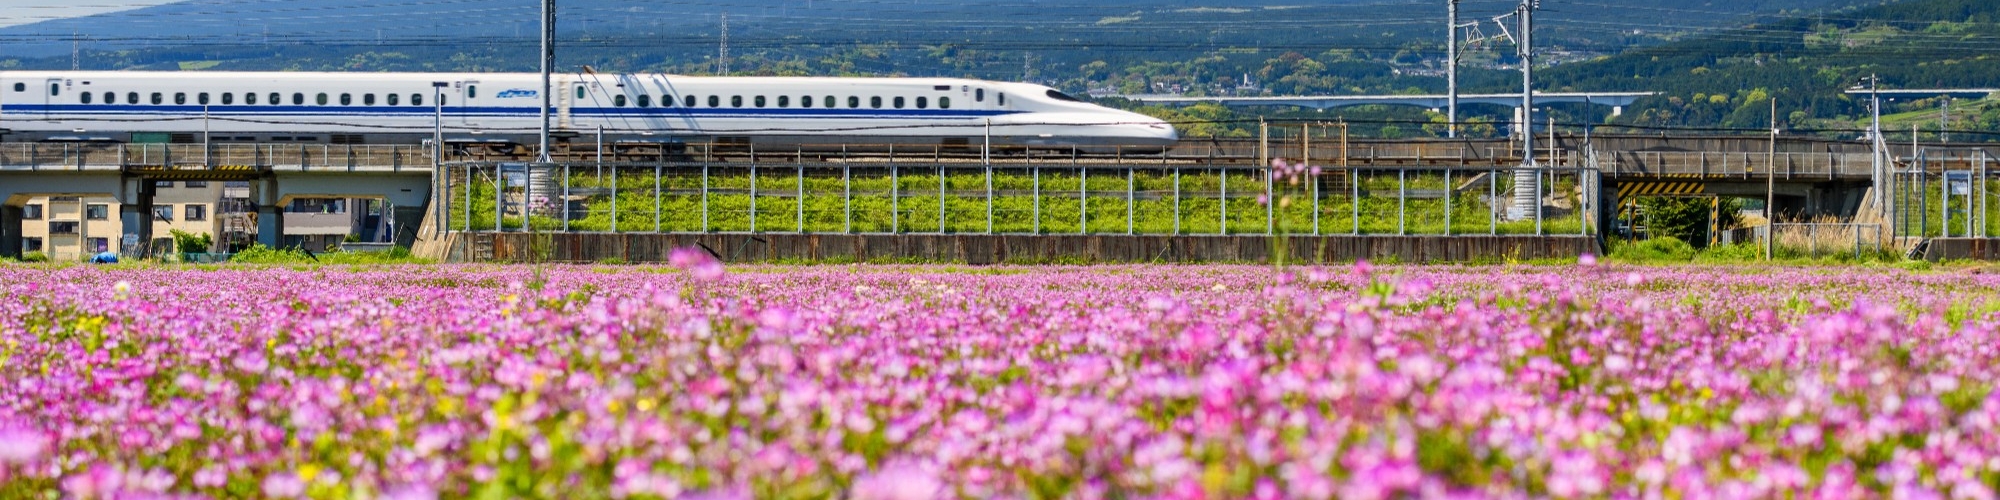 Shinkansen bullet train pass Mountain fuji